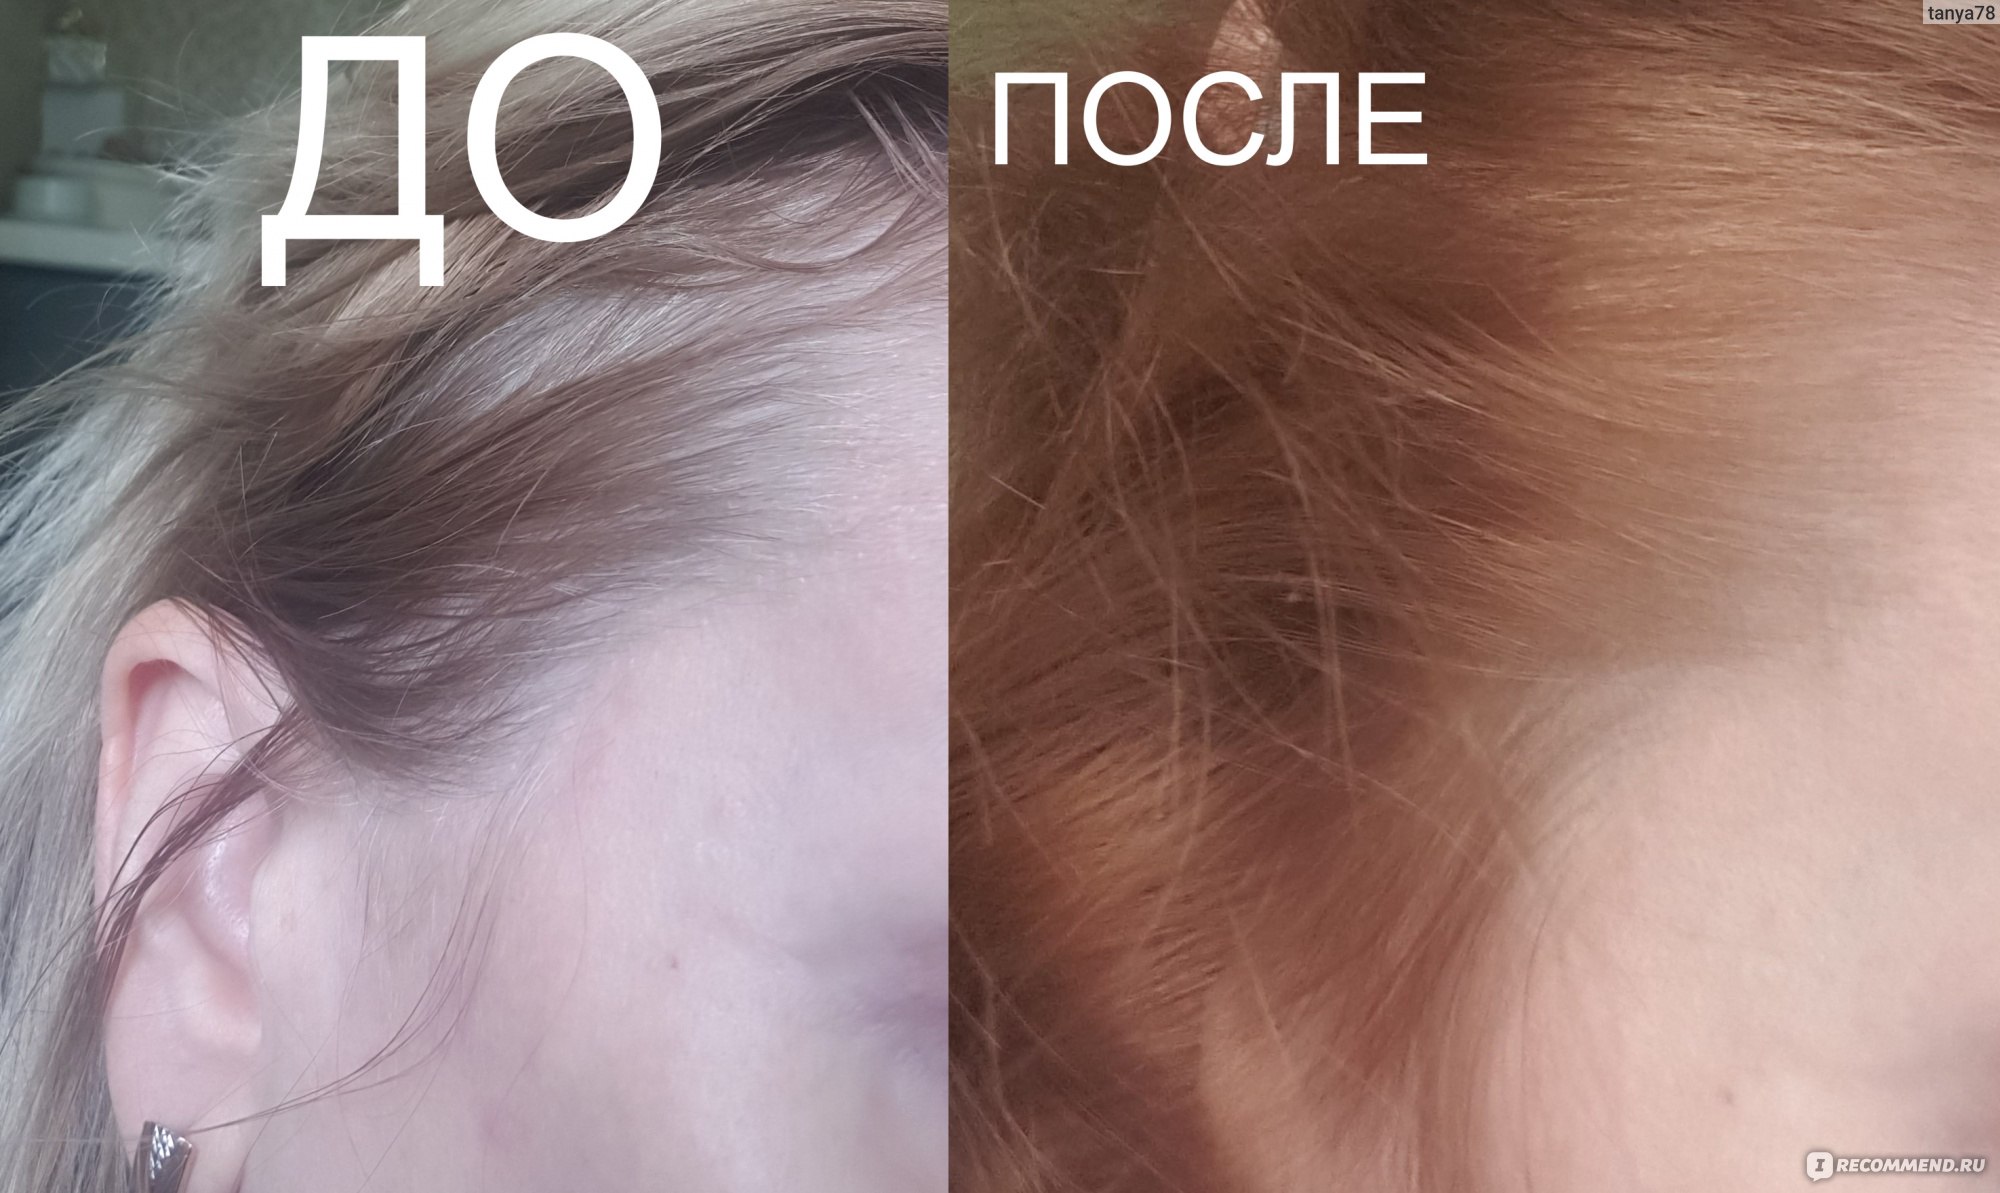 10 0 эстель фото на волосах